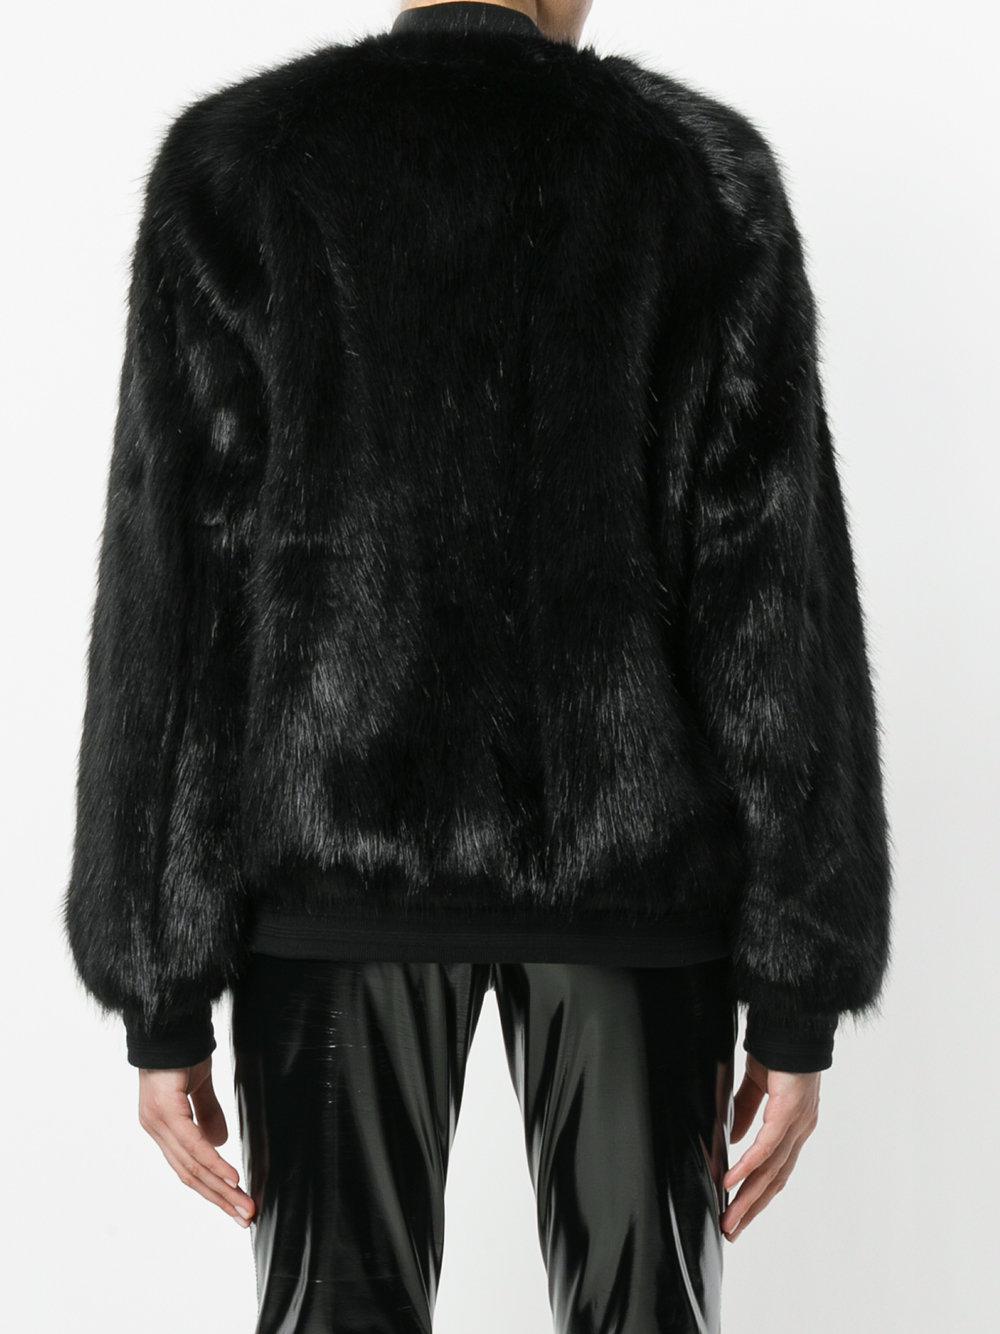 adidas black fur jacket